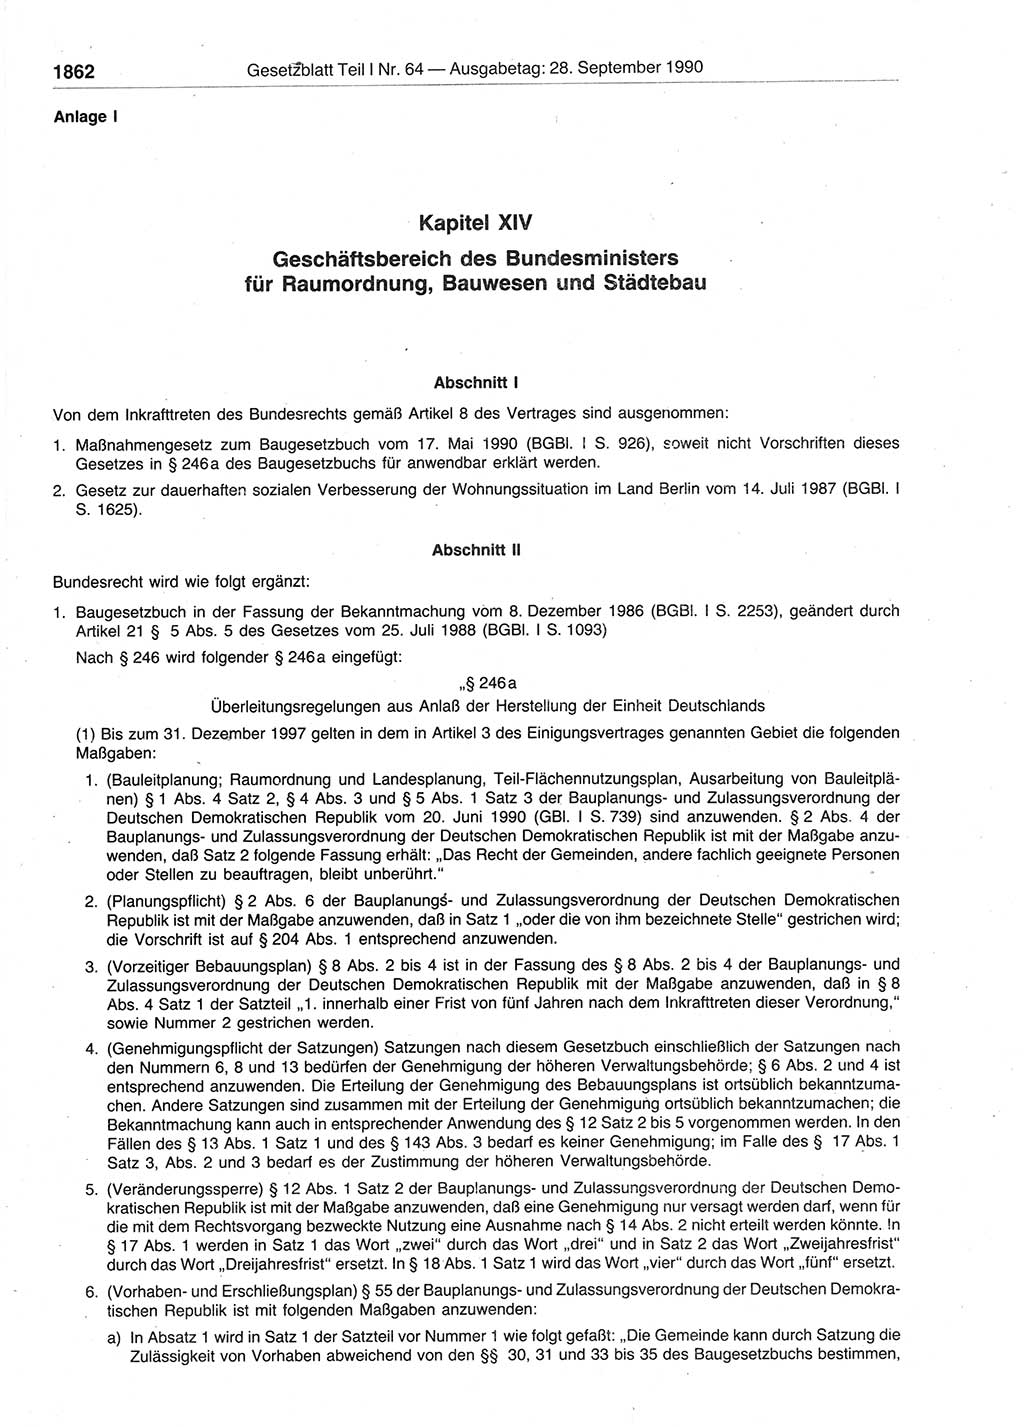 Gesetzblatt (GBl.) der Deutschen Demokratischen Republik (DDR) Teil Ⅰ 1990, Seite 1862 (GBl. DDR Ⅰ 1990, S. 1862)